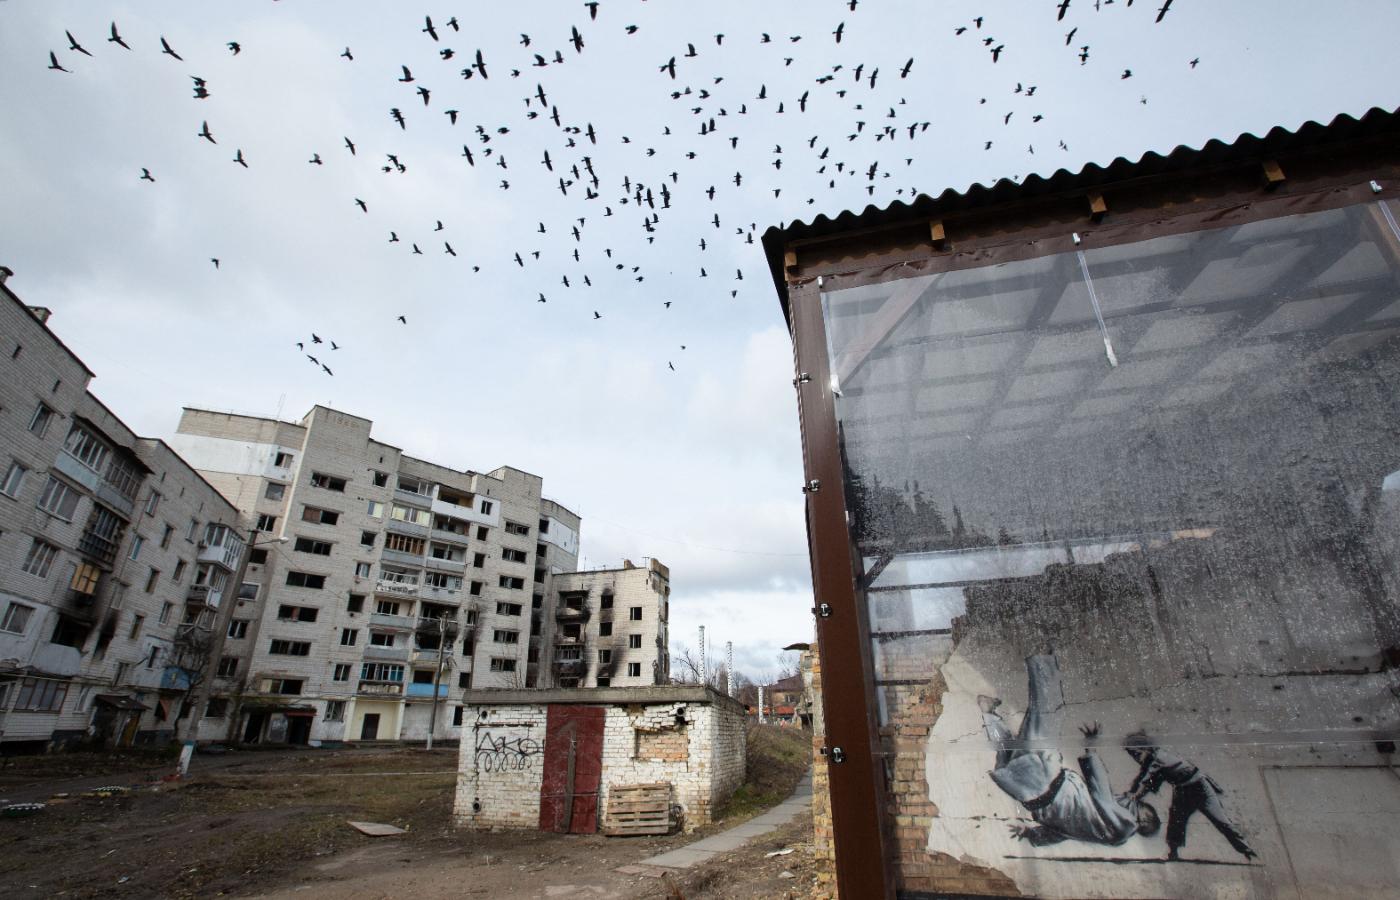 Widok zniszczeń w mieście Borodianka i graffiti angielskiego artysty Banksy′ego na jednej ze ścian zniszczonego bloku. 26 lutego 2023 r.